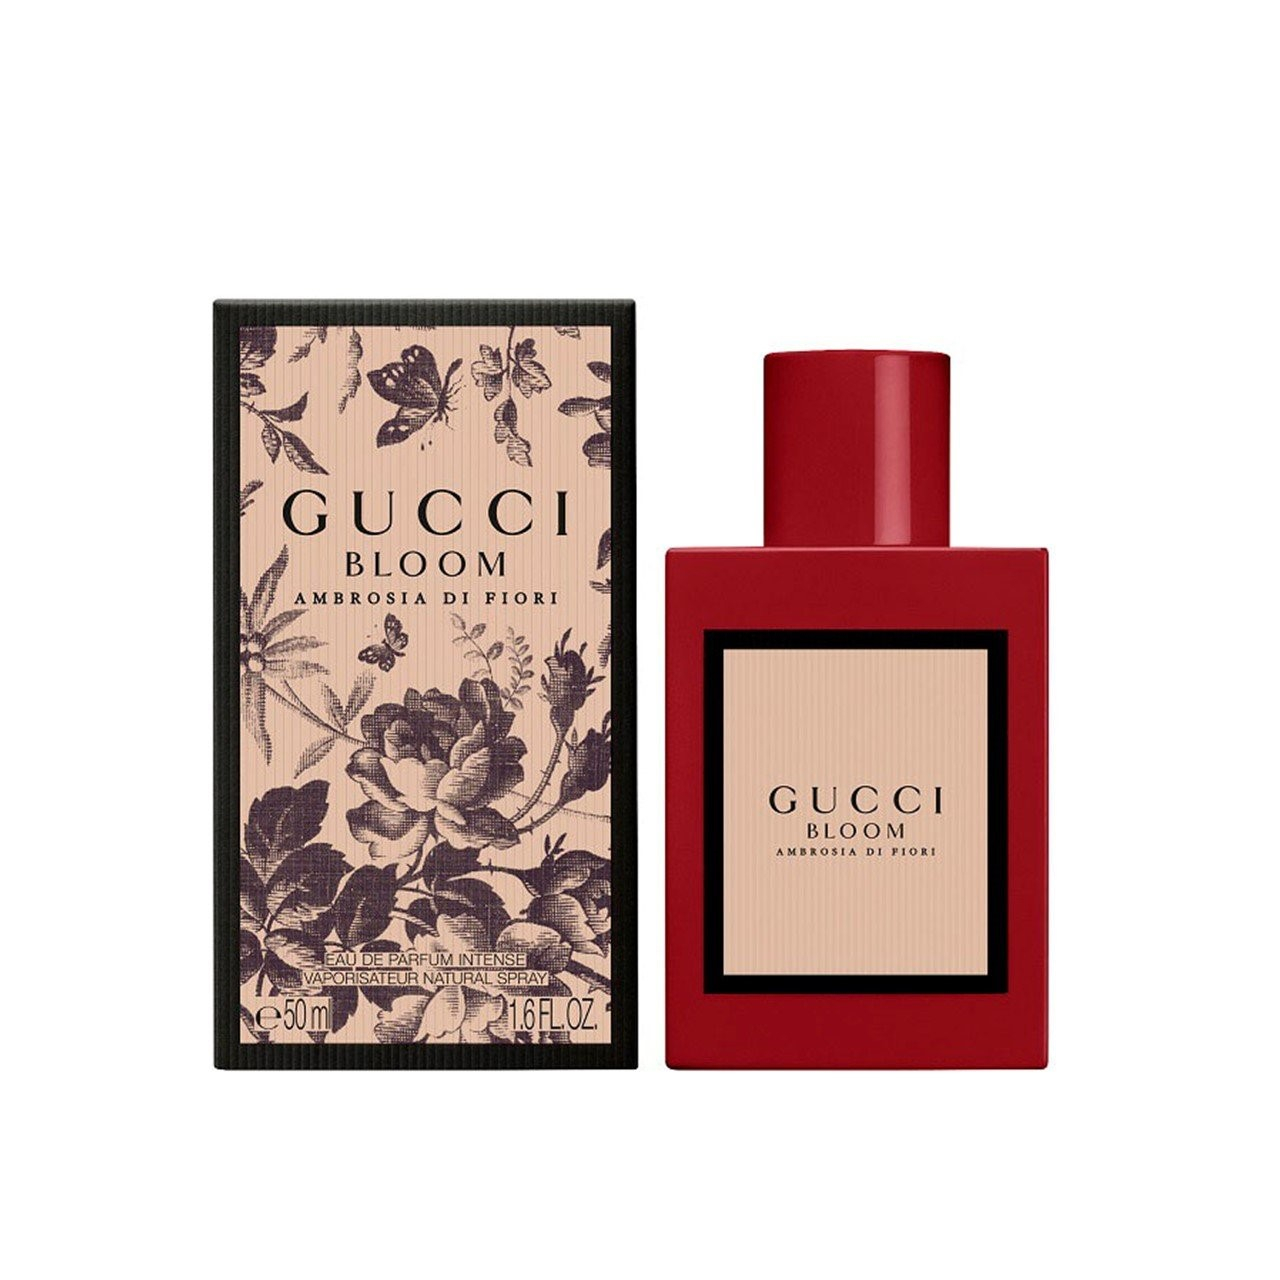 Buy Gucci Bloom Ambrosia Di Fiori Eau de Parfum Intense · USA